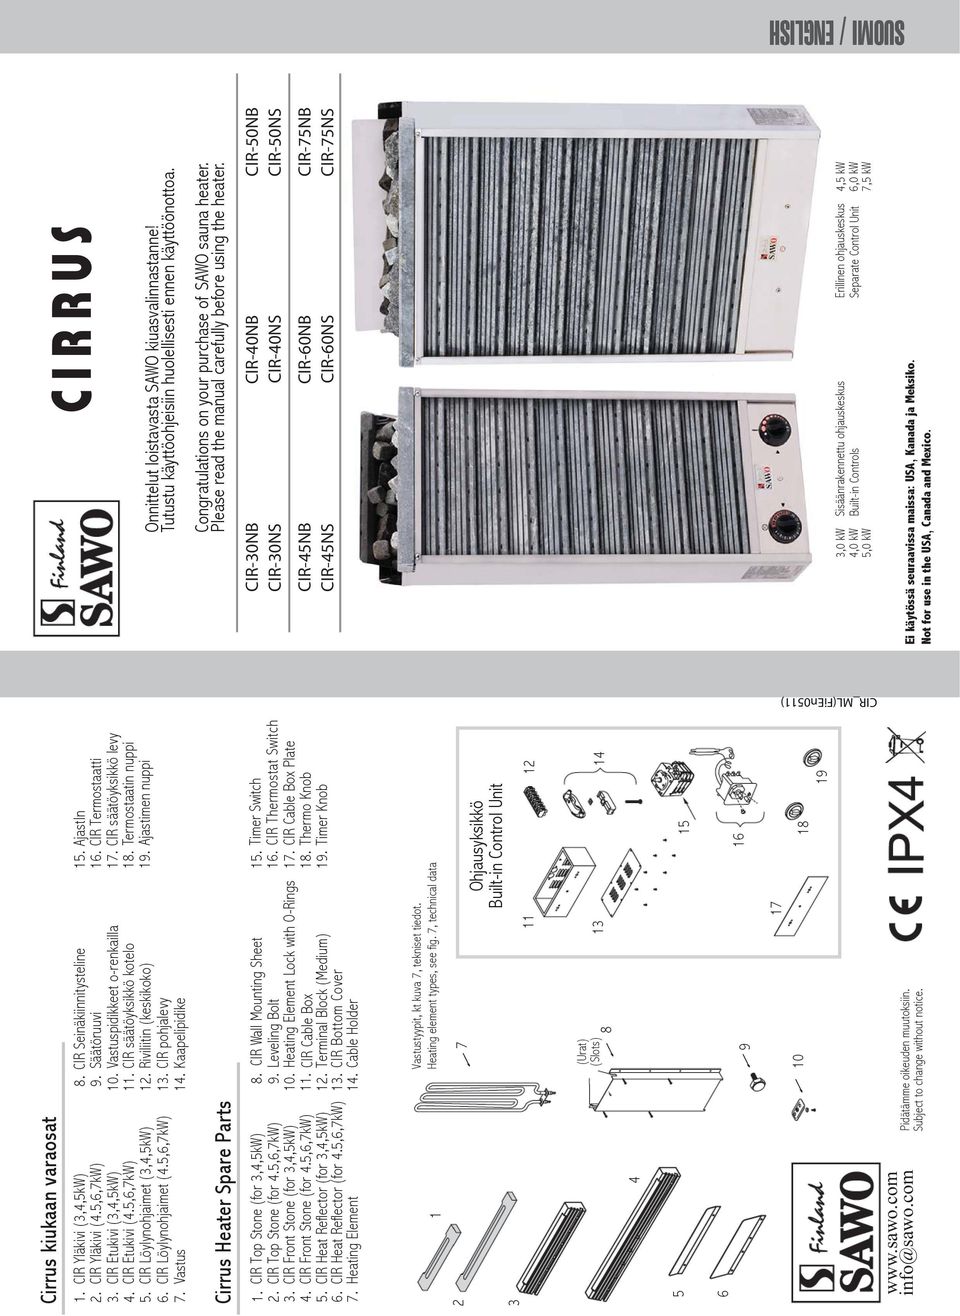 AjastIn CIR Termostaatti CIR säätöyksikkö levy Termostaatin nuppi Ajastimen nuppi Cirrus Heater Spare Parts.. 7.